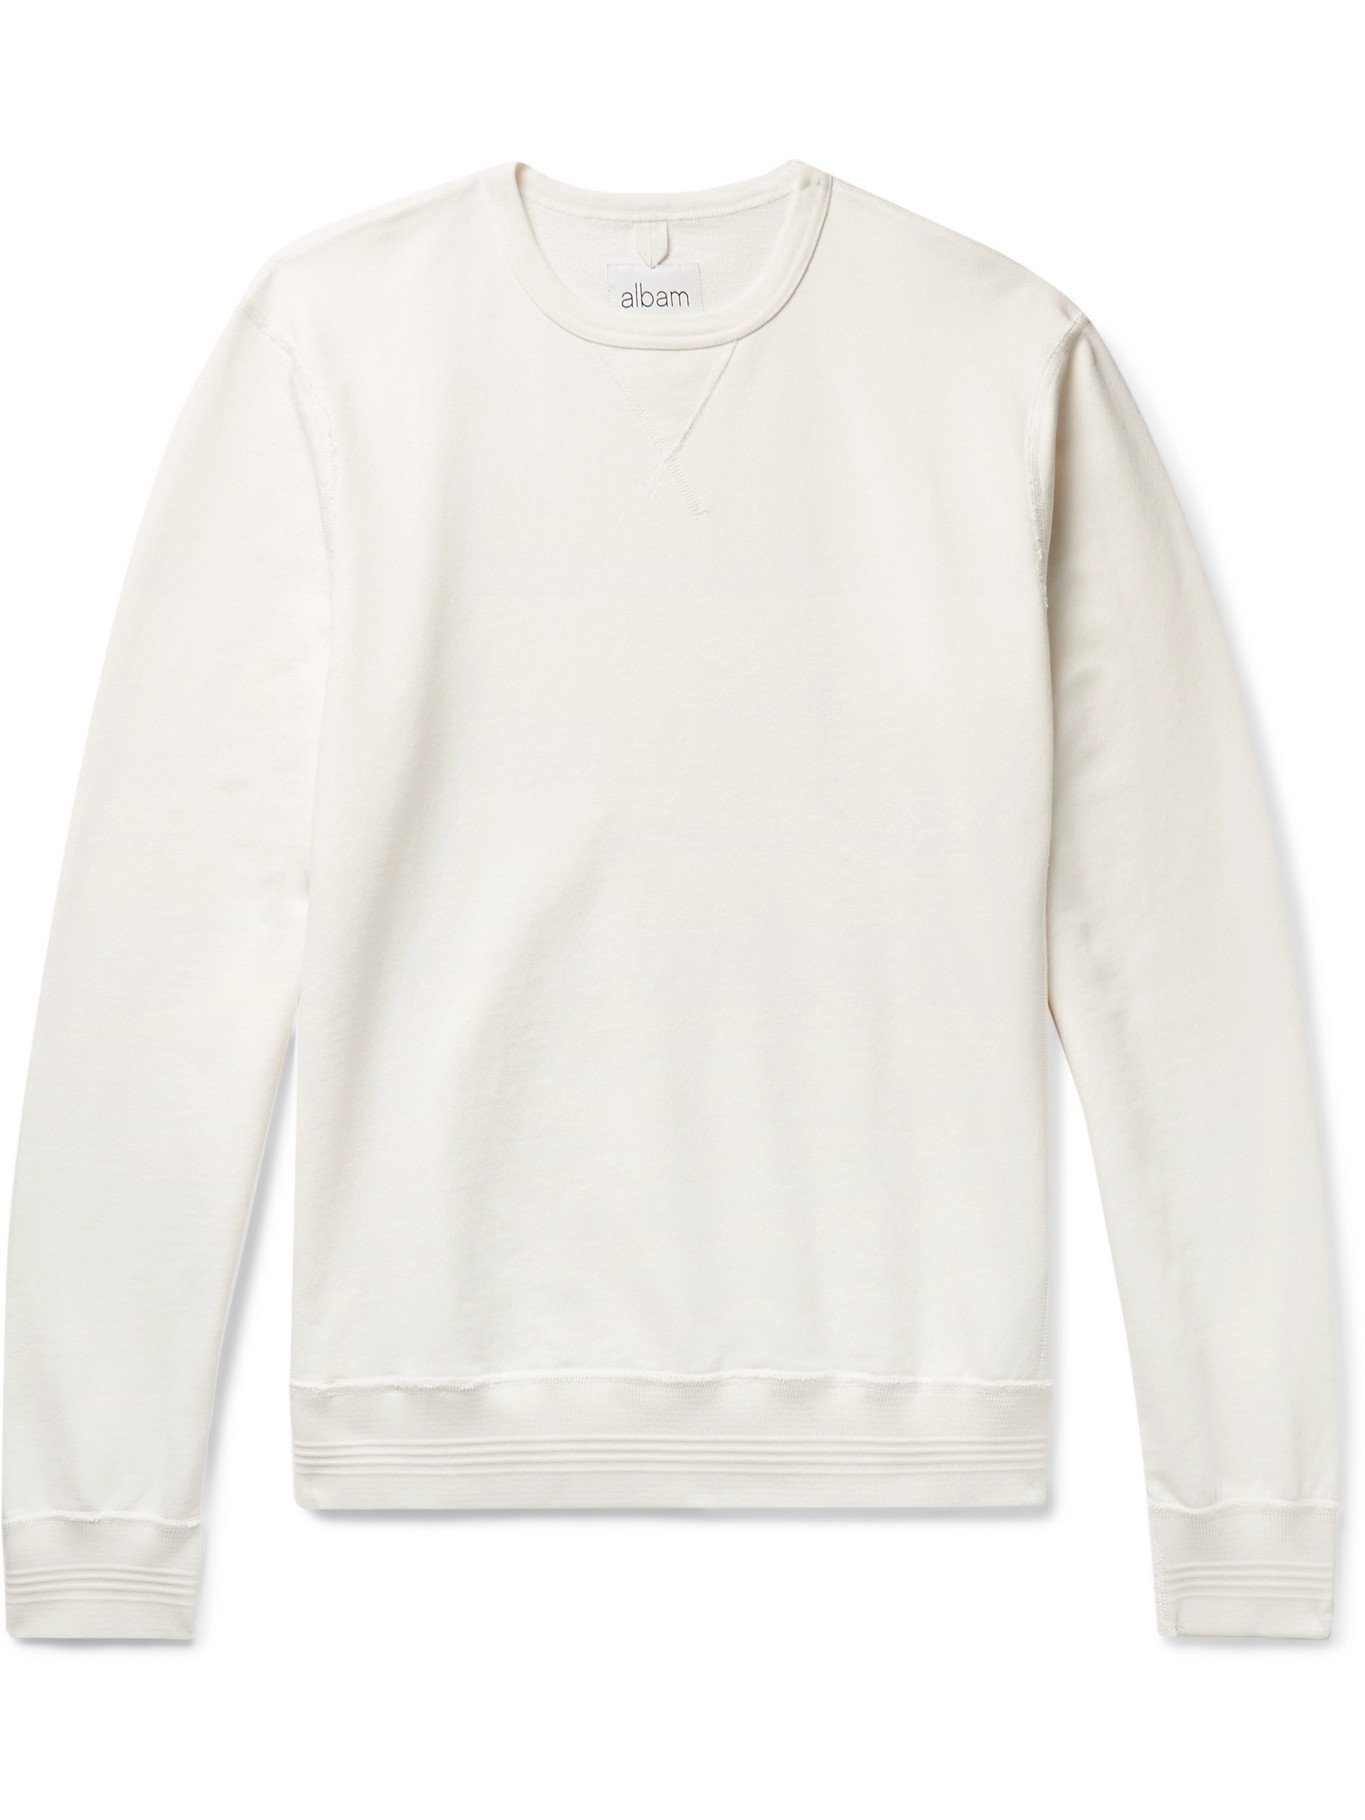 Albam - Loopback Cotton-Jersey Sweatshirt - Neutrals Albam